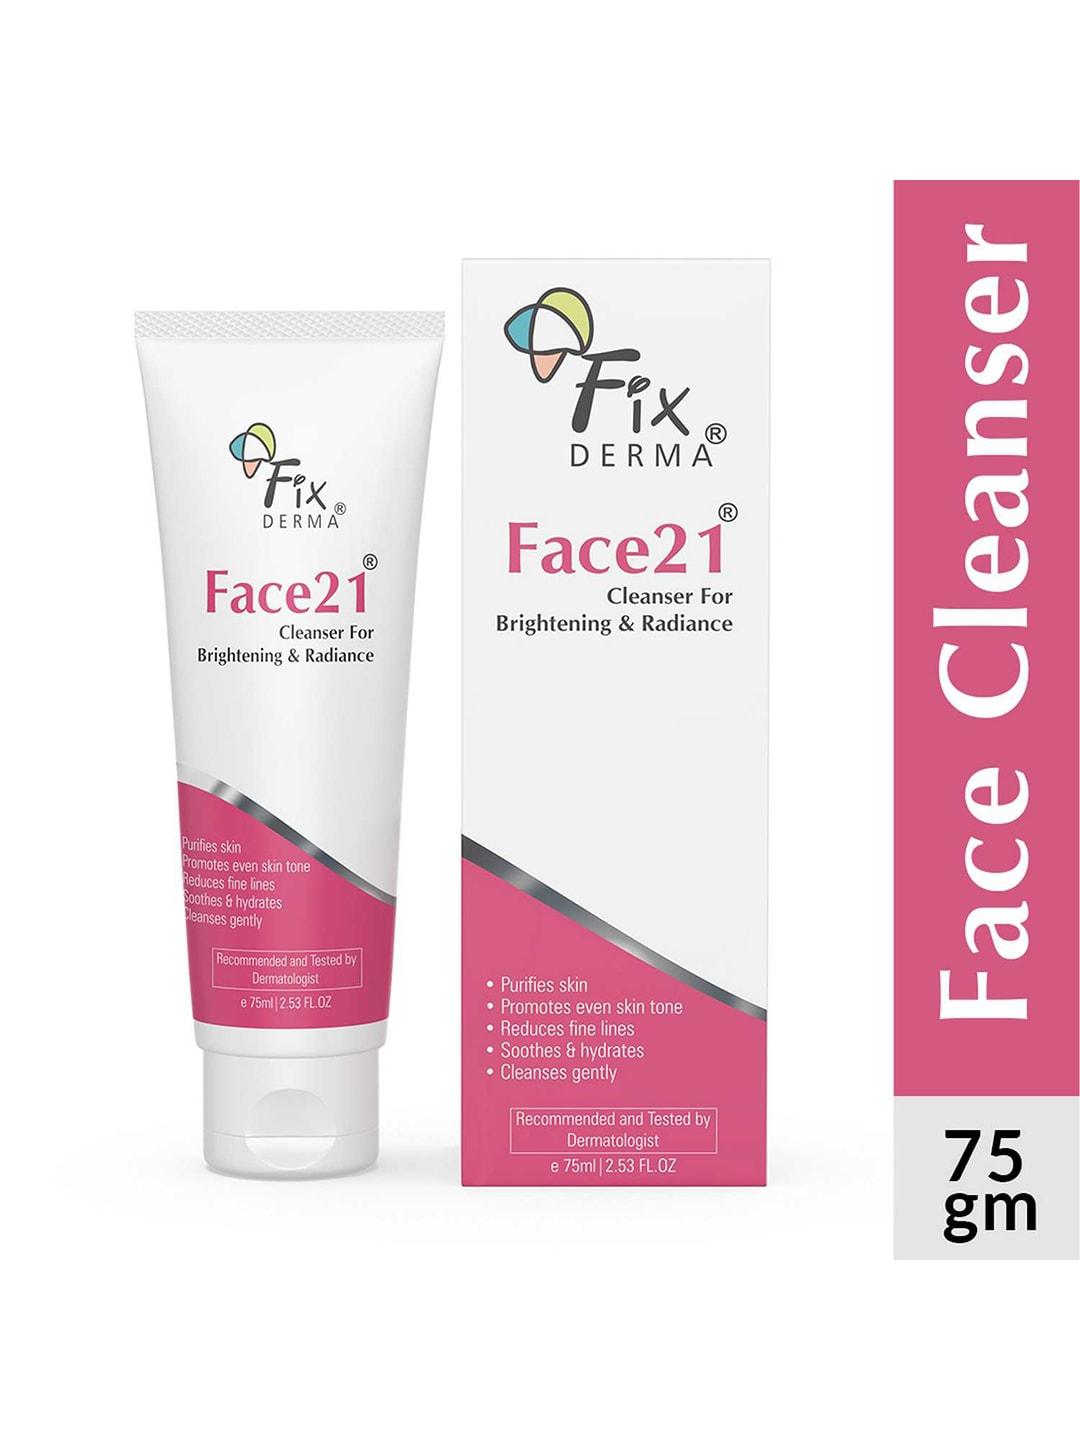 Fixderma Face21 Cleanser - 75ml